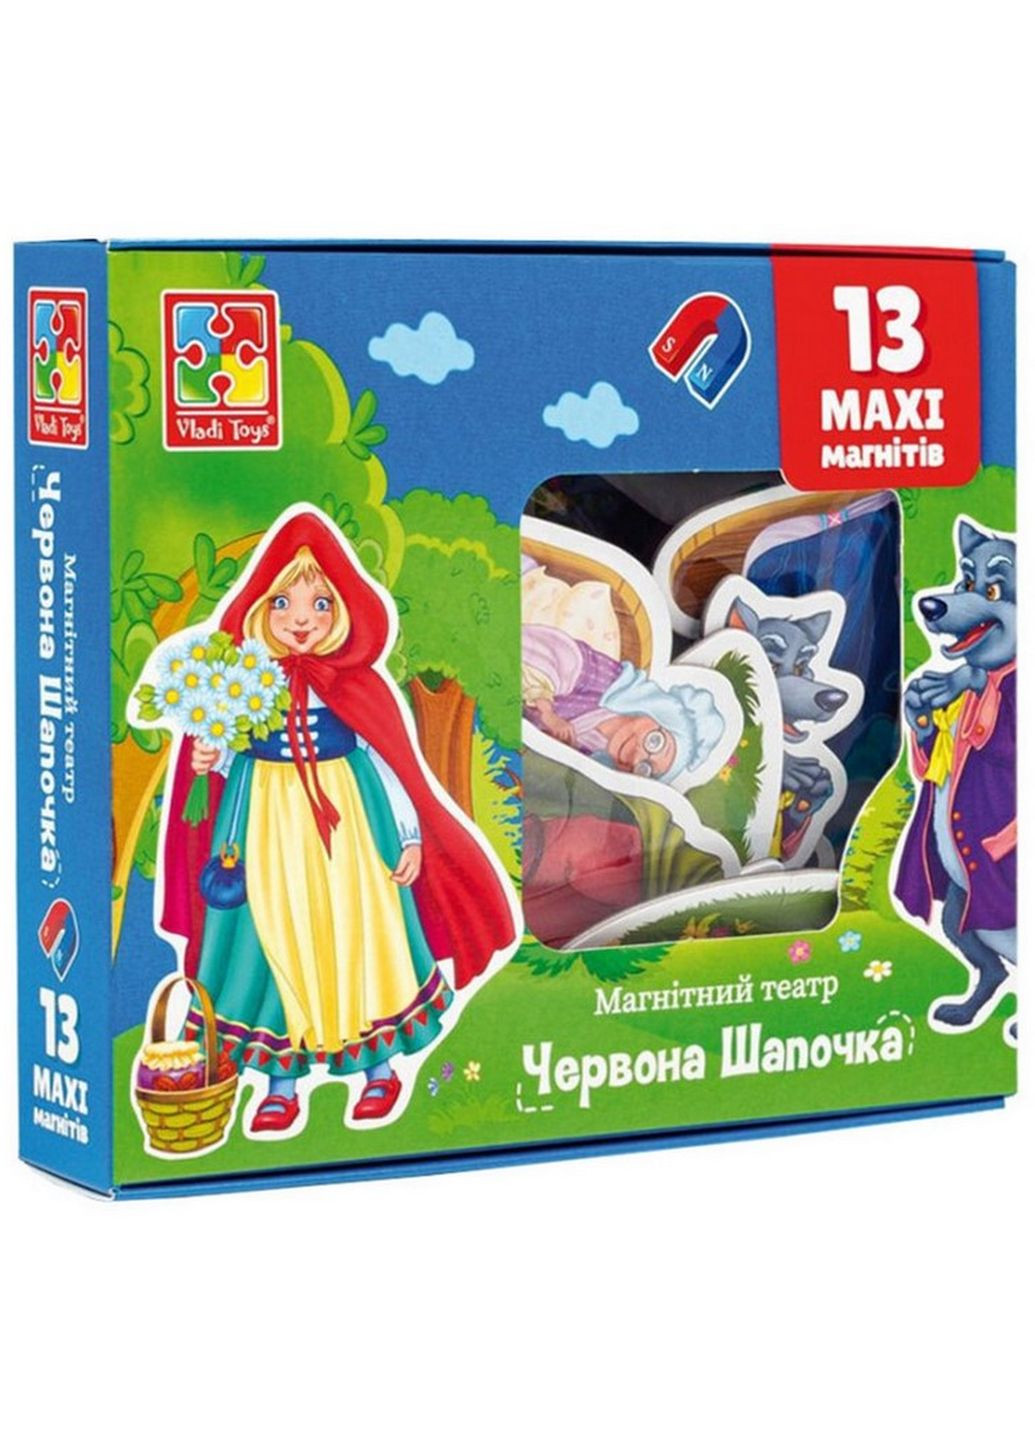 Настільна гра магнітний театр "Червона шапочка" VT3206-52 Укр Vladi toys (262085237)